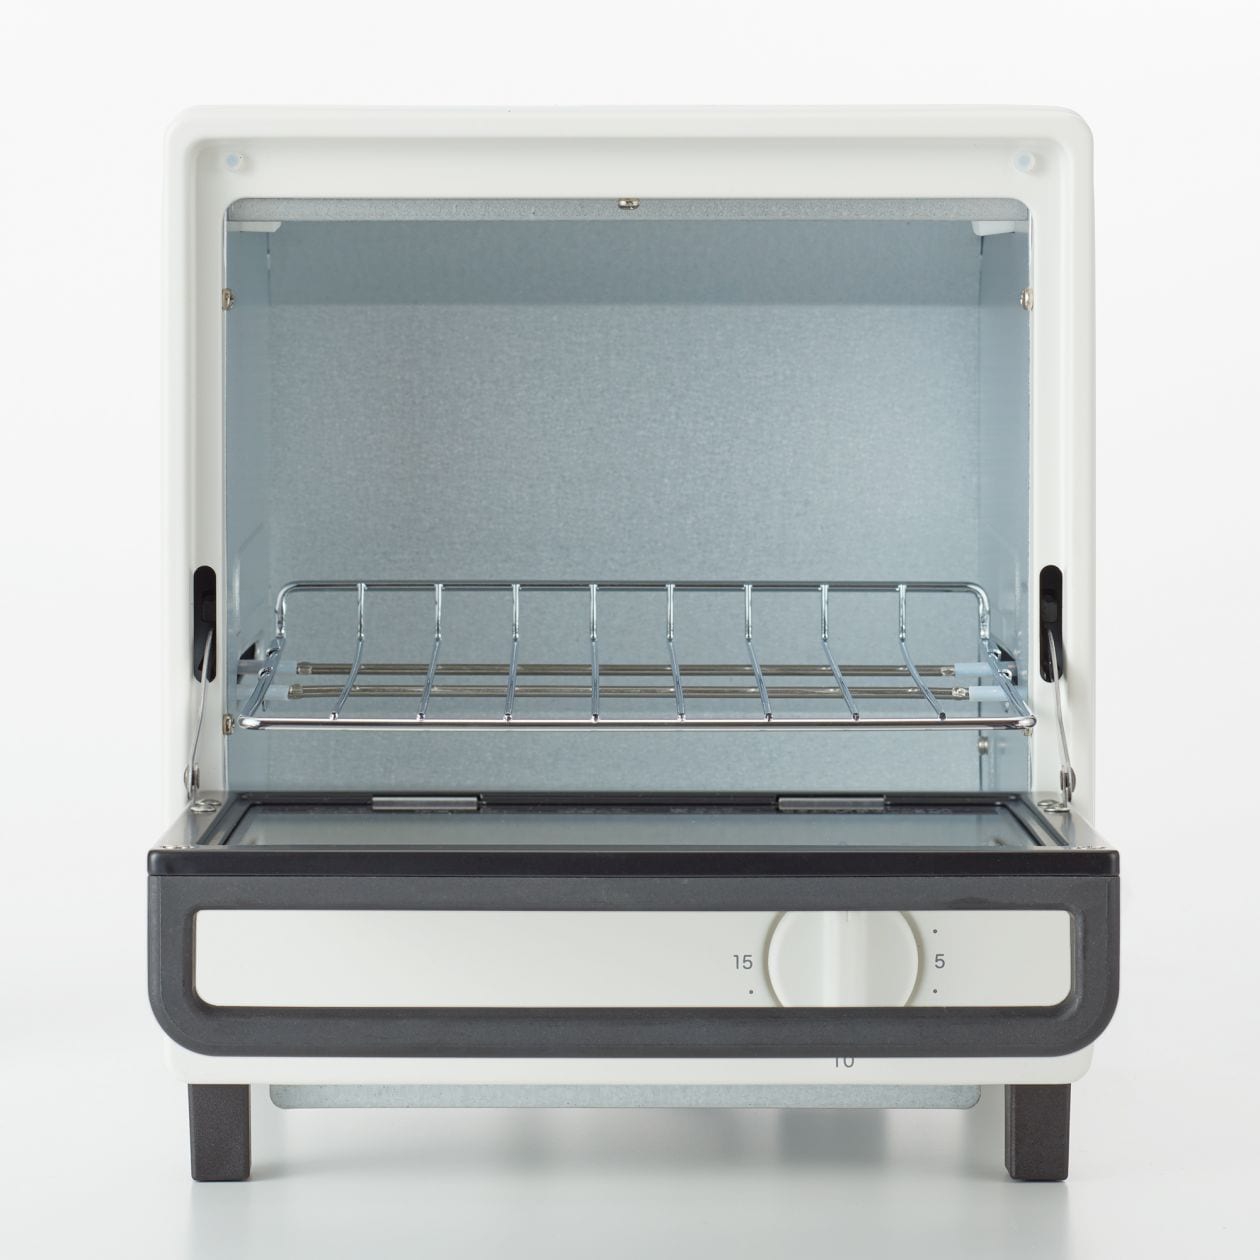 無印良品(MUJI) オーブントースター MJ-SOT1の商品画像サムネ2 